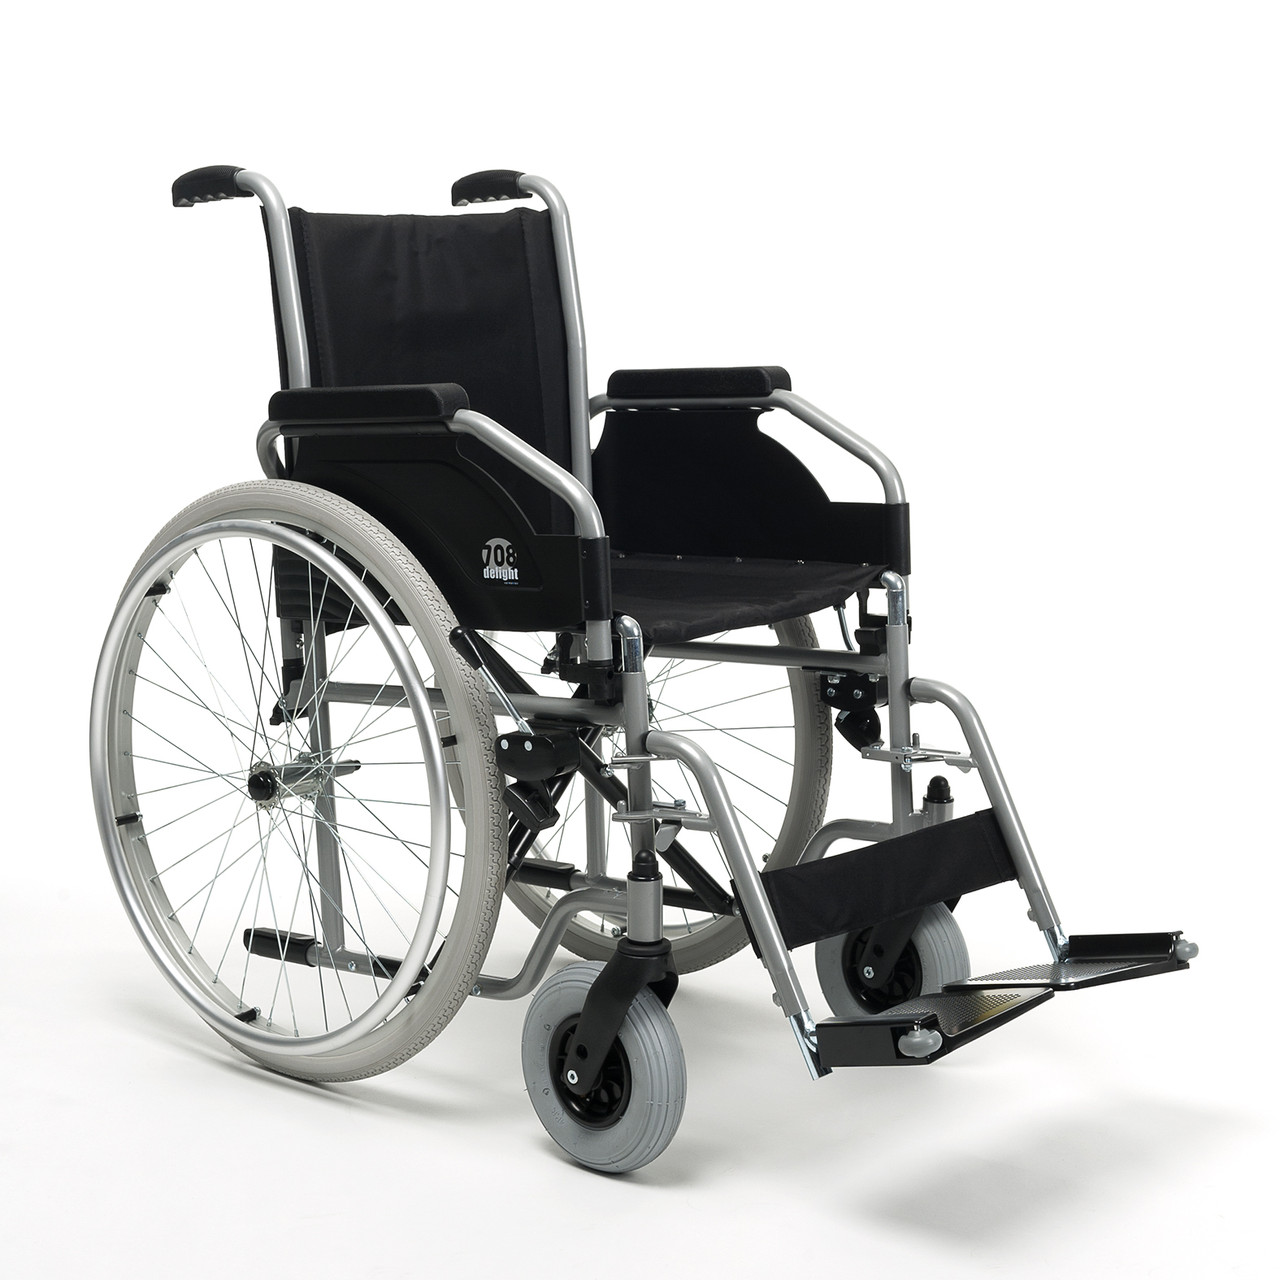 Инвалидная коляска для взрослых 708D Vermeiren (Сидение 50 см., литые колеса)